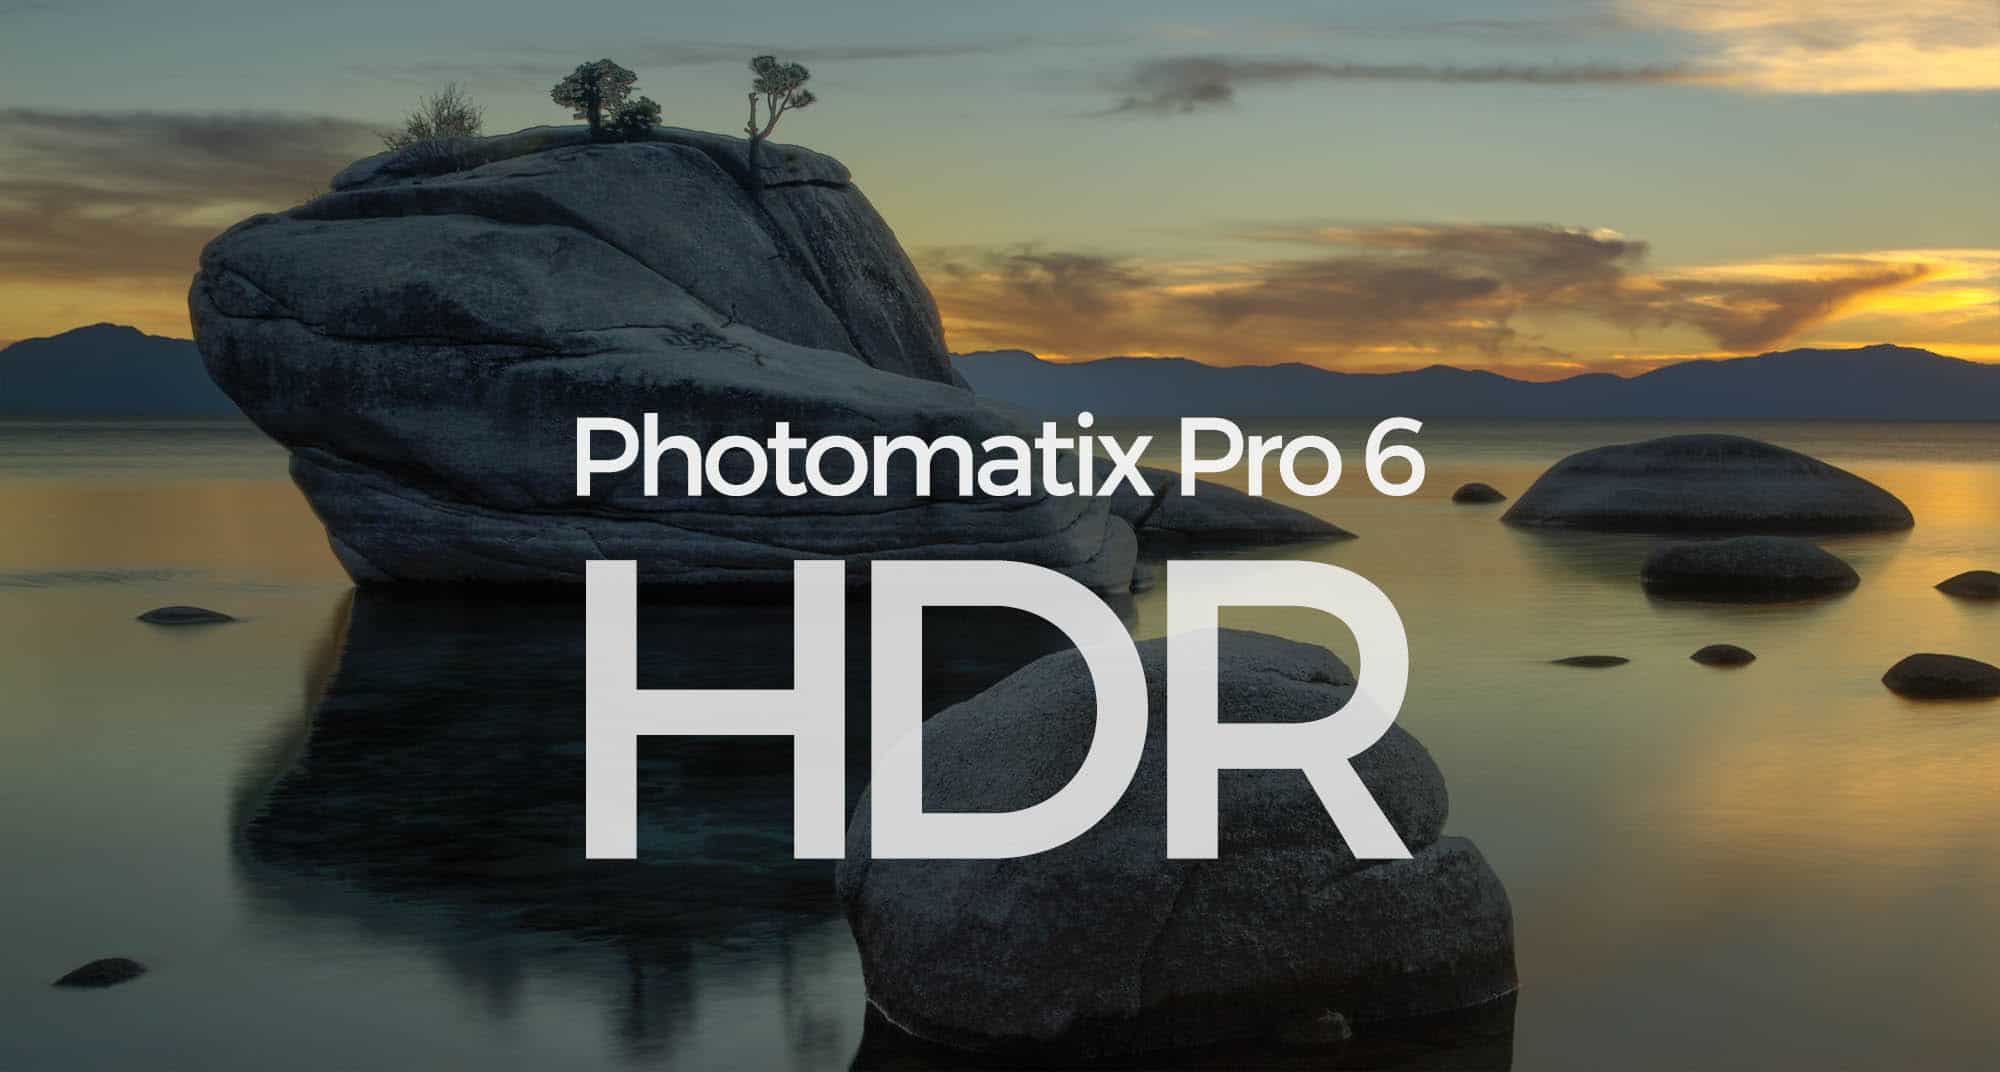 PhotoMatix Pro 6 Crack